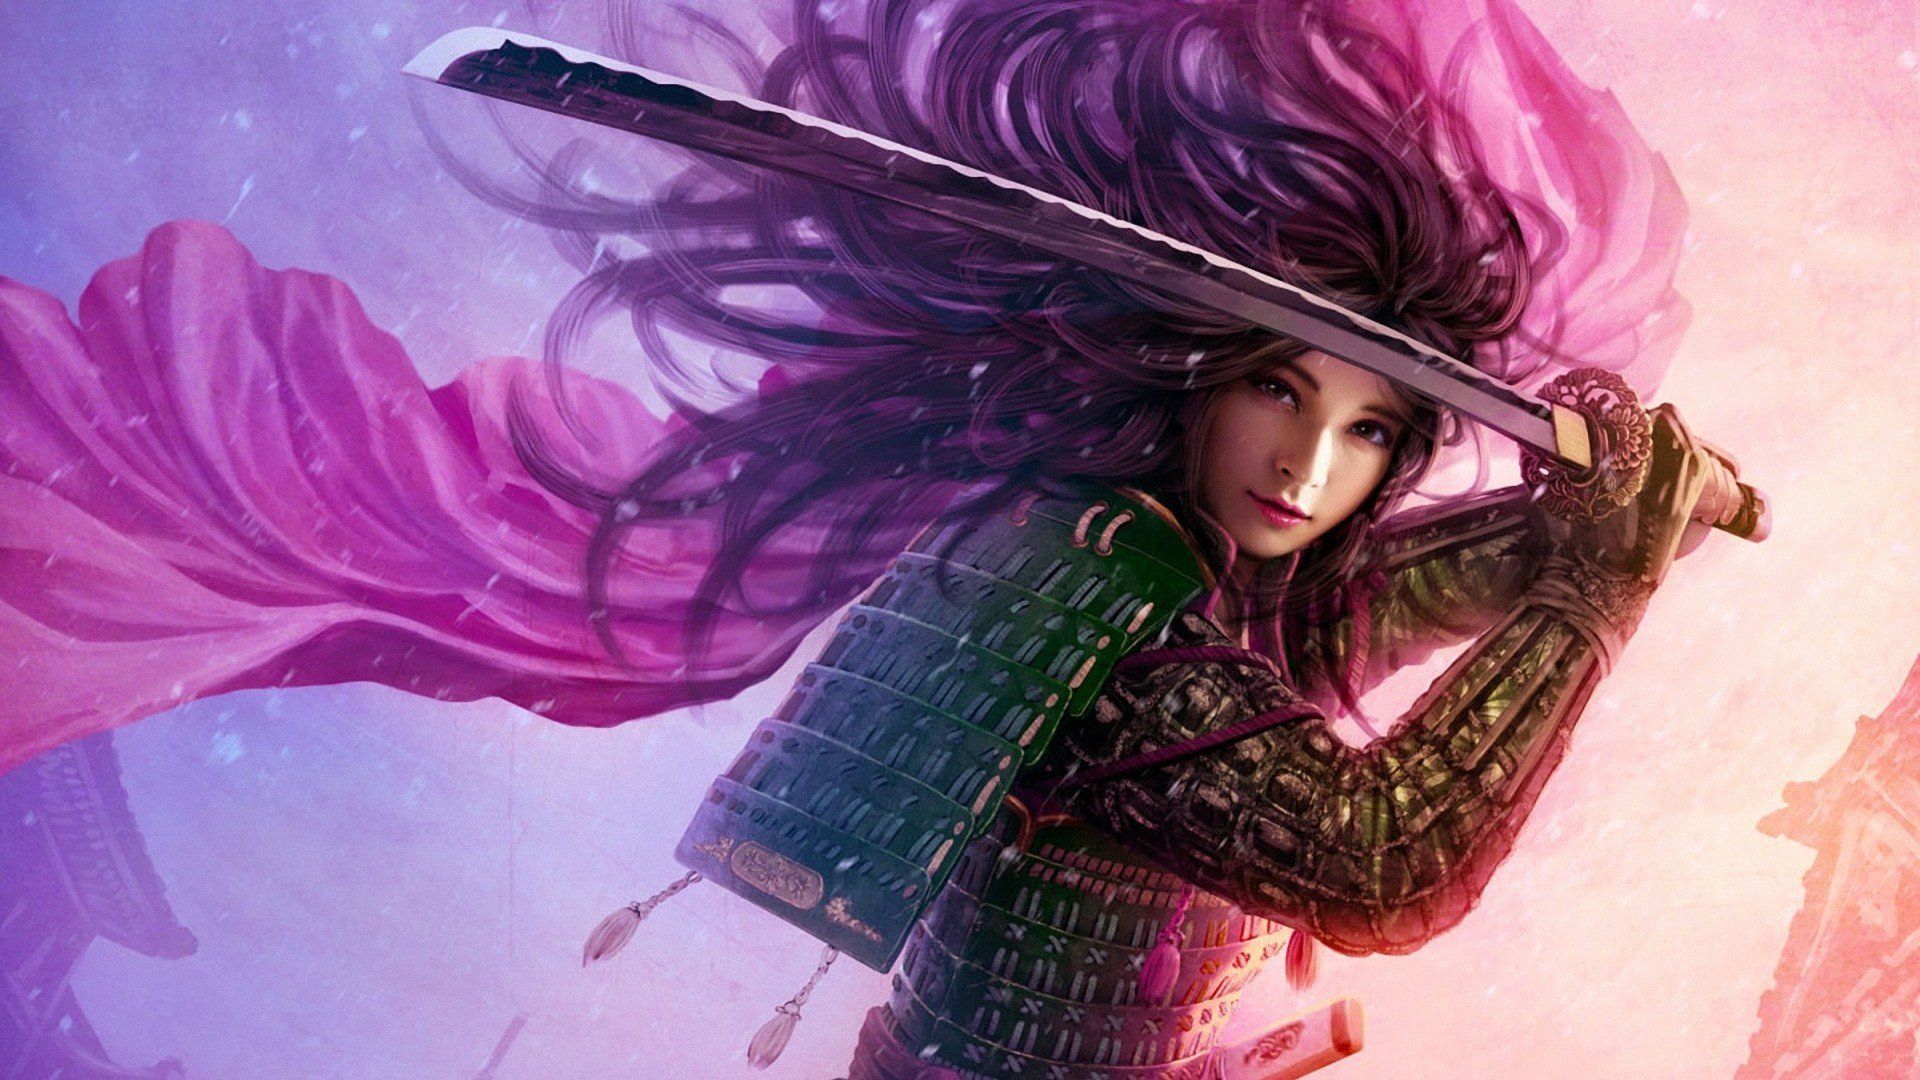 Women abstract samurai wallpaper .wallpaperup.com